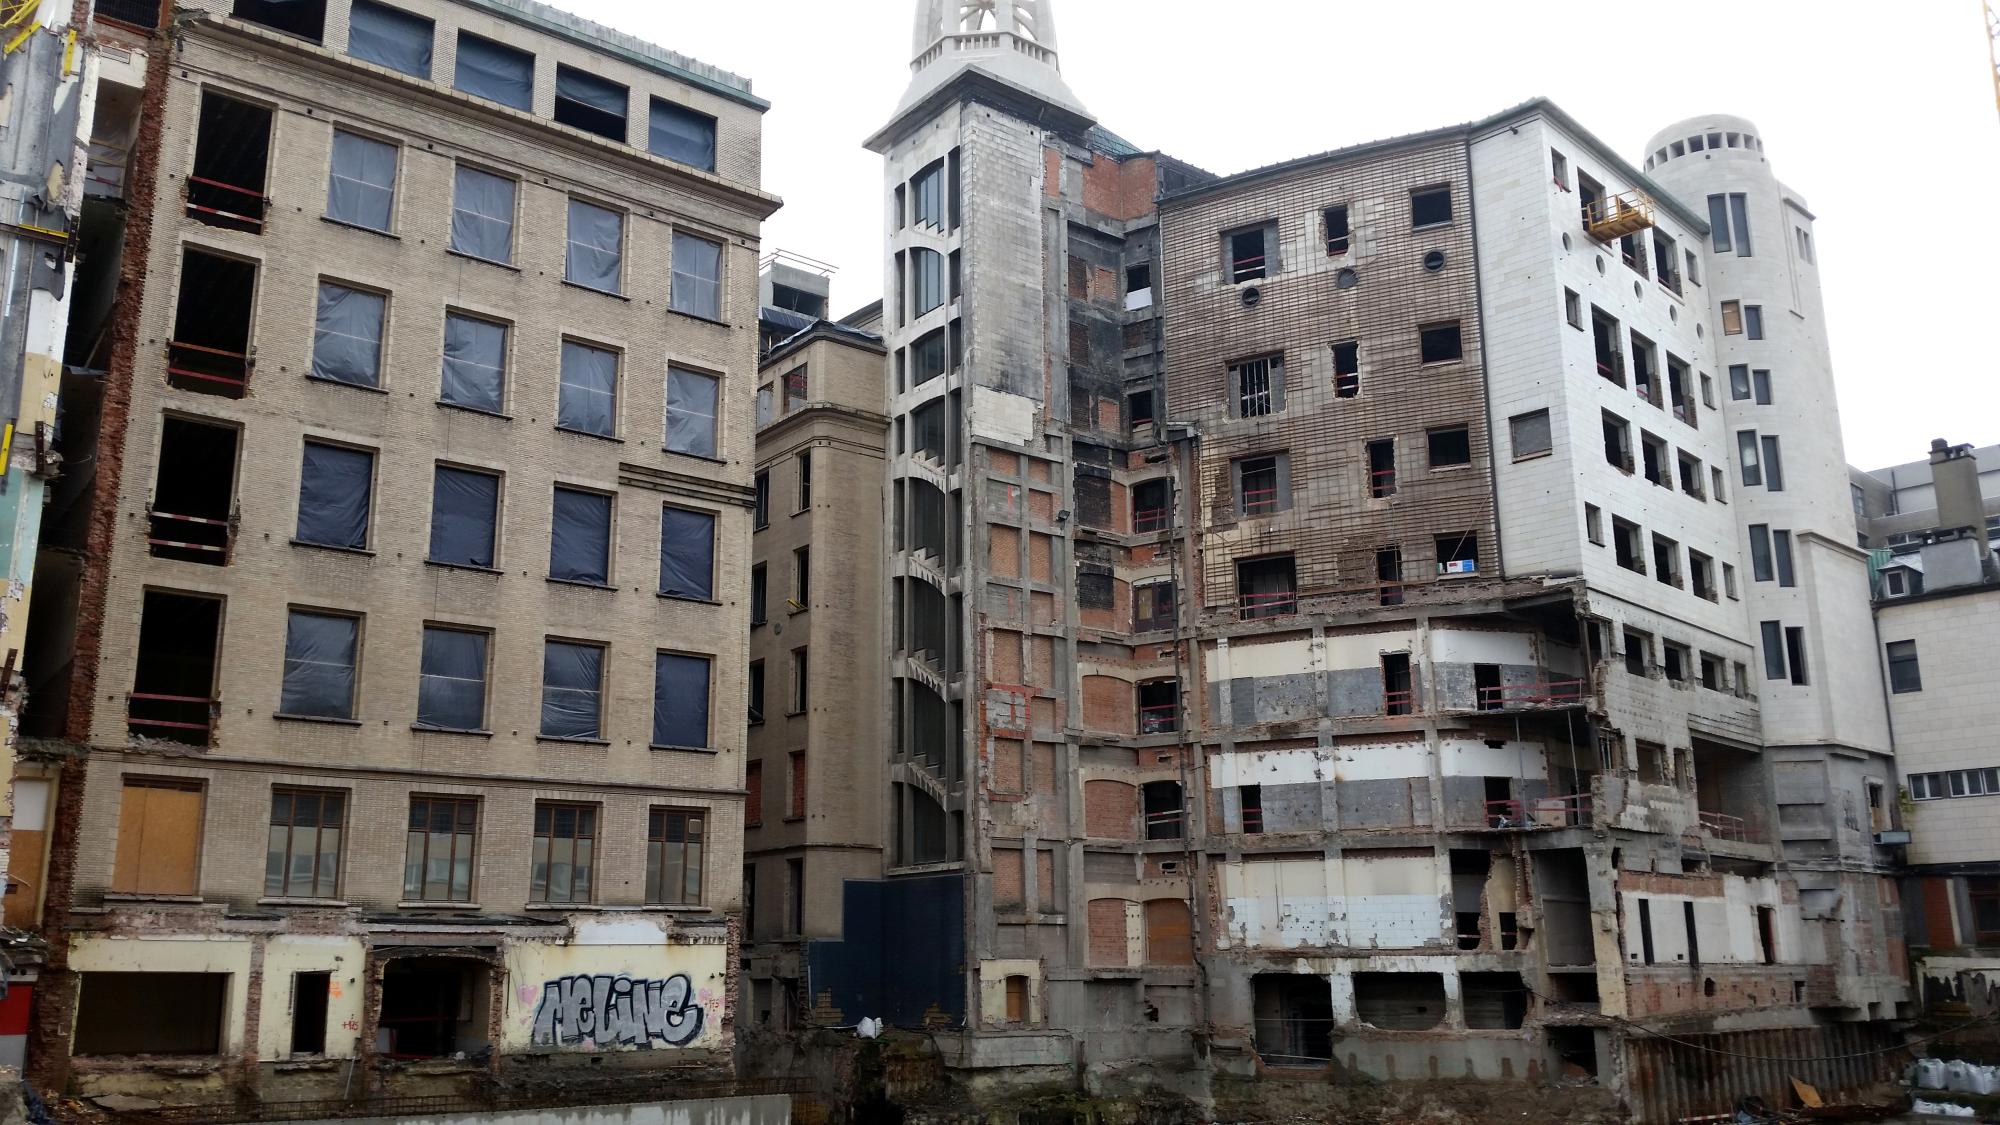 Brussels (2010-2016) - Demolition